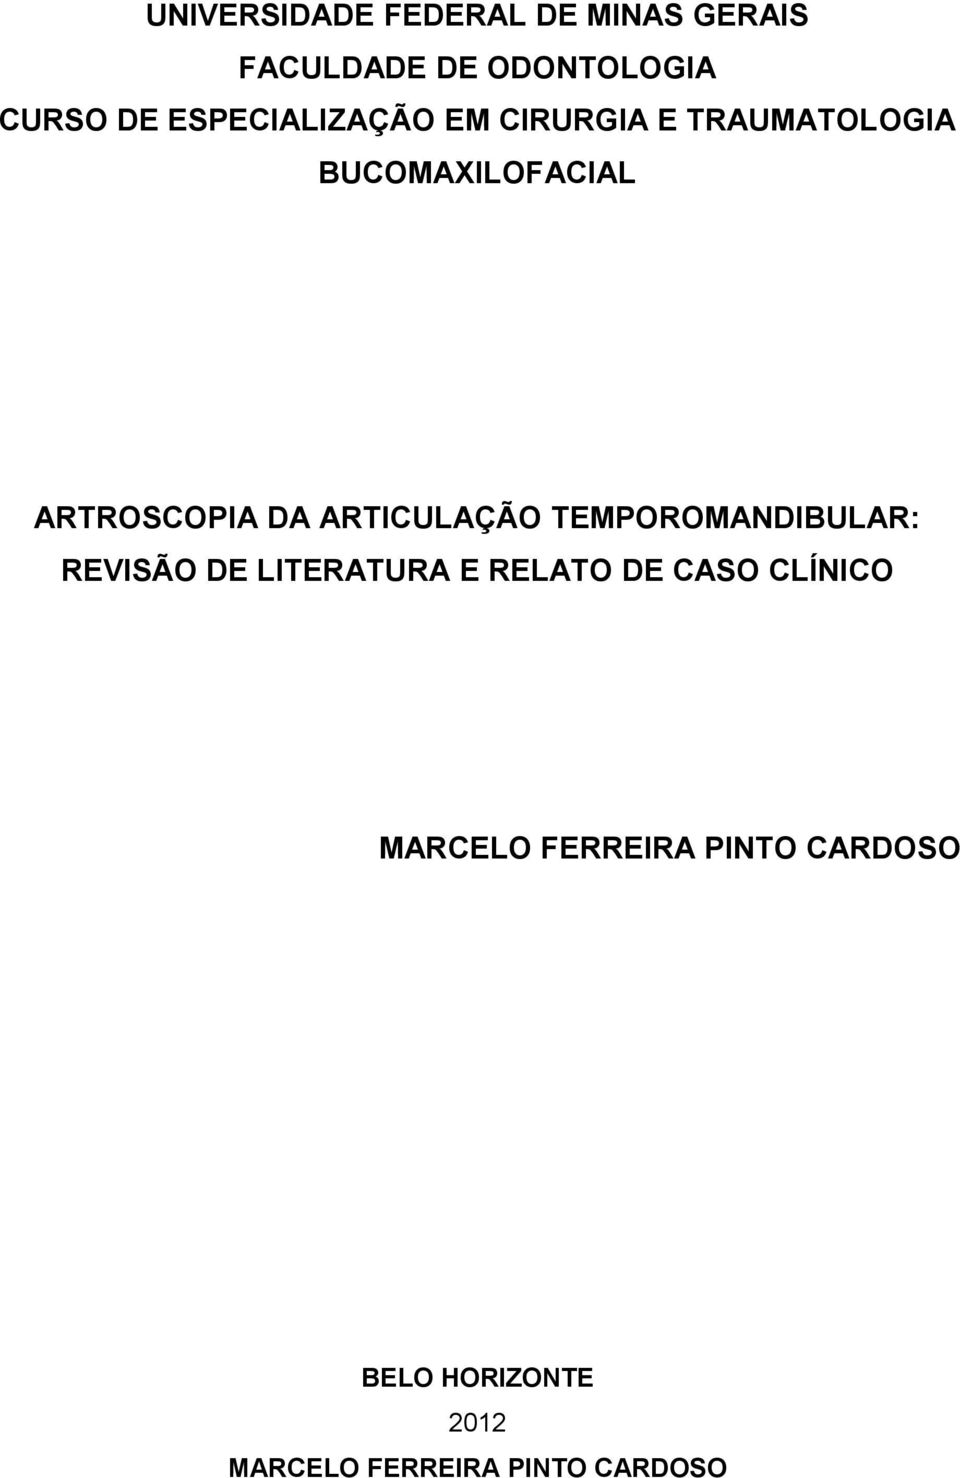 ARTICULAÇÃO TEMPOROMANDIBULAR: REVISÃO DE LITERATURA E RELATO DE CASO